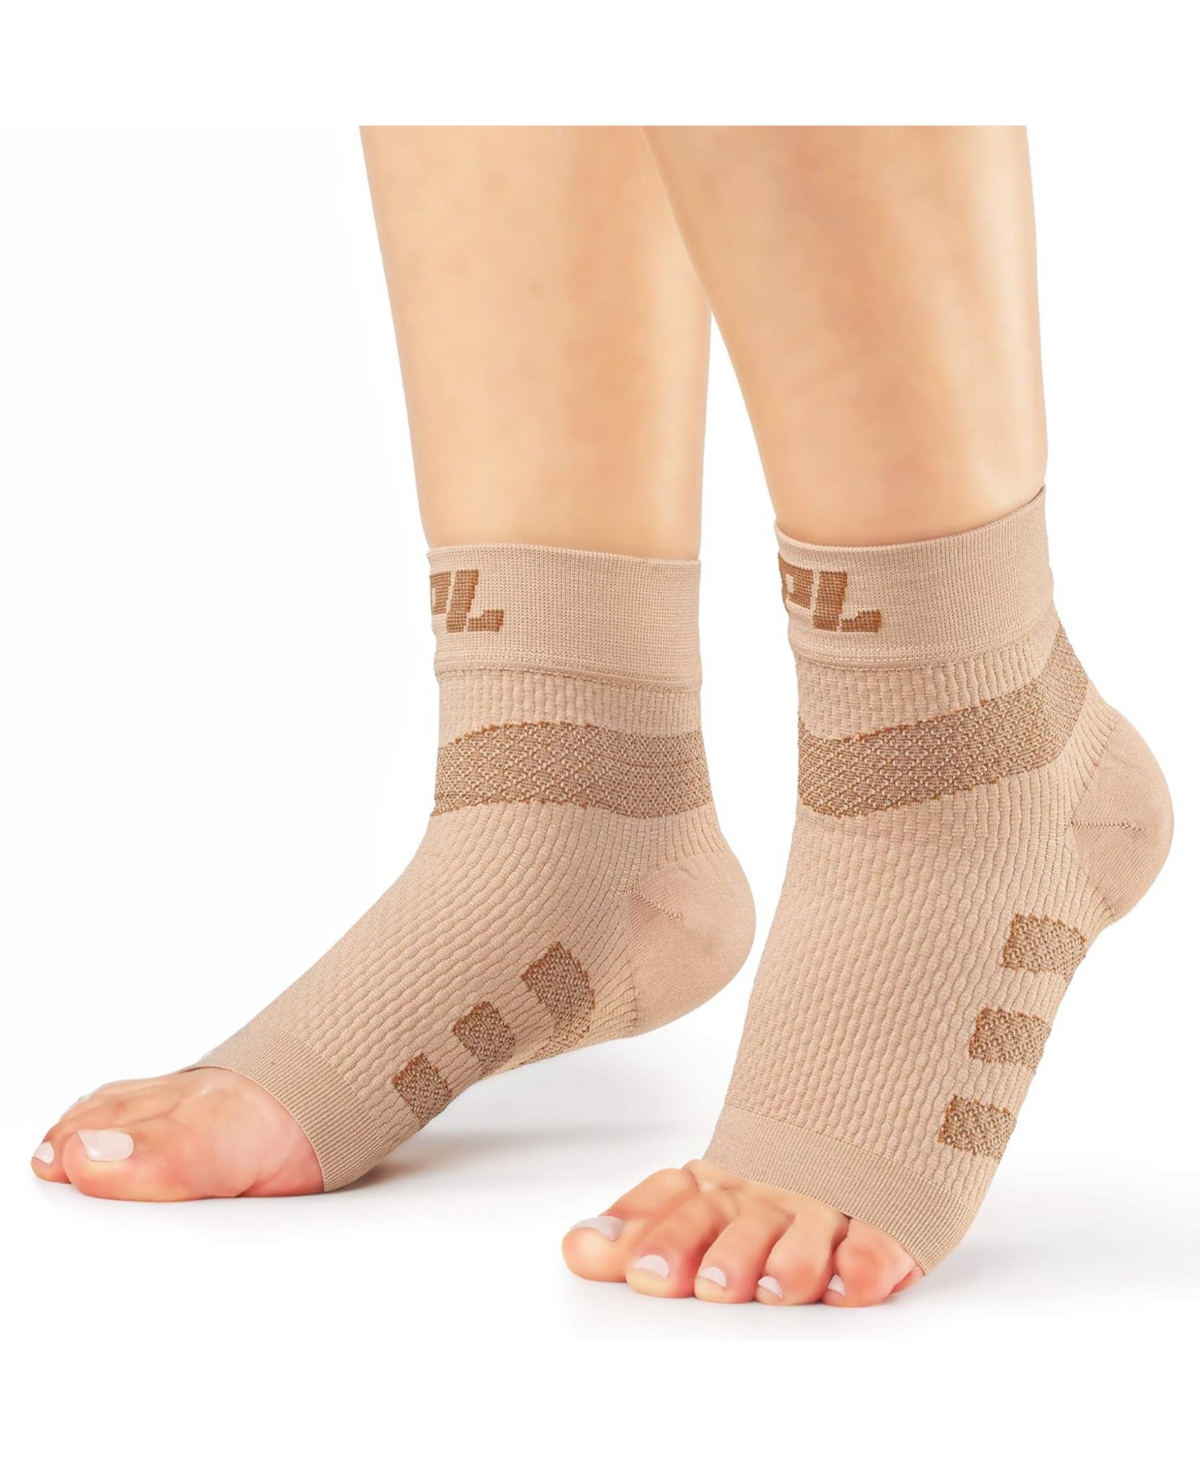 Large Orthopedic Feet Brace Women & Men: for Arthritis, Tendinitis - 2 Pair - Beige ( pair)